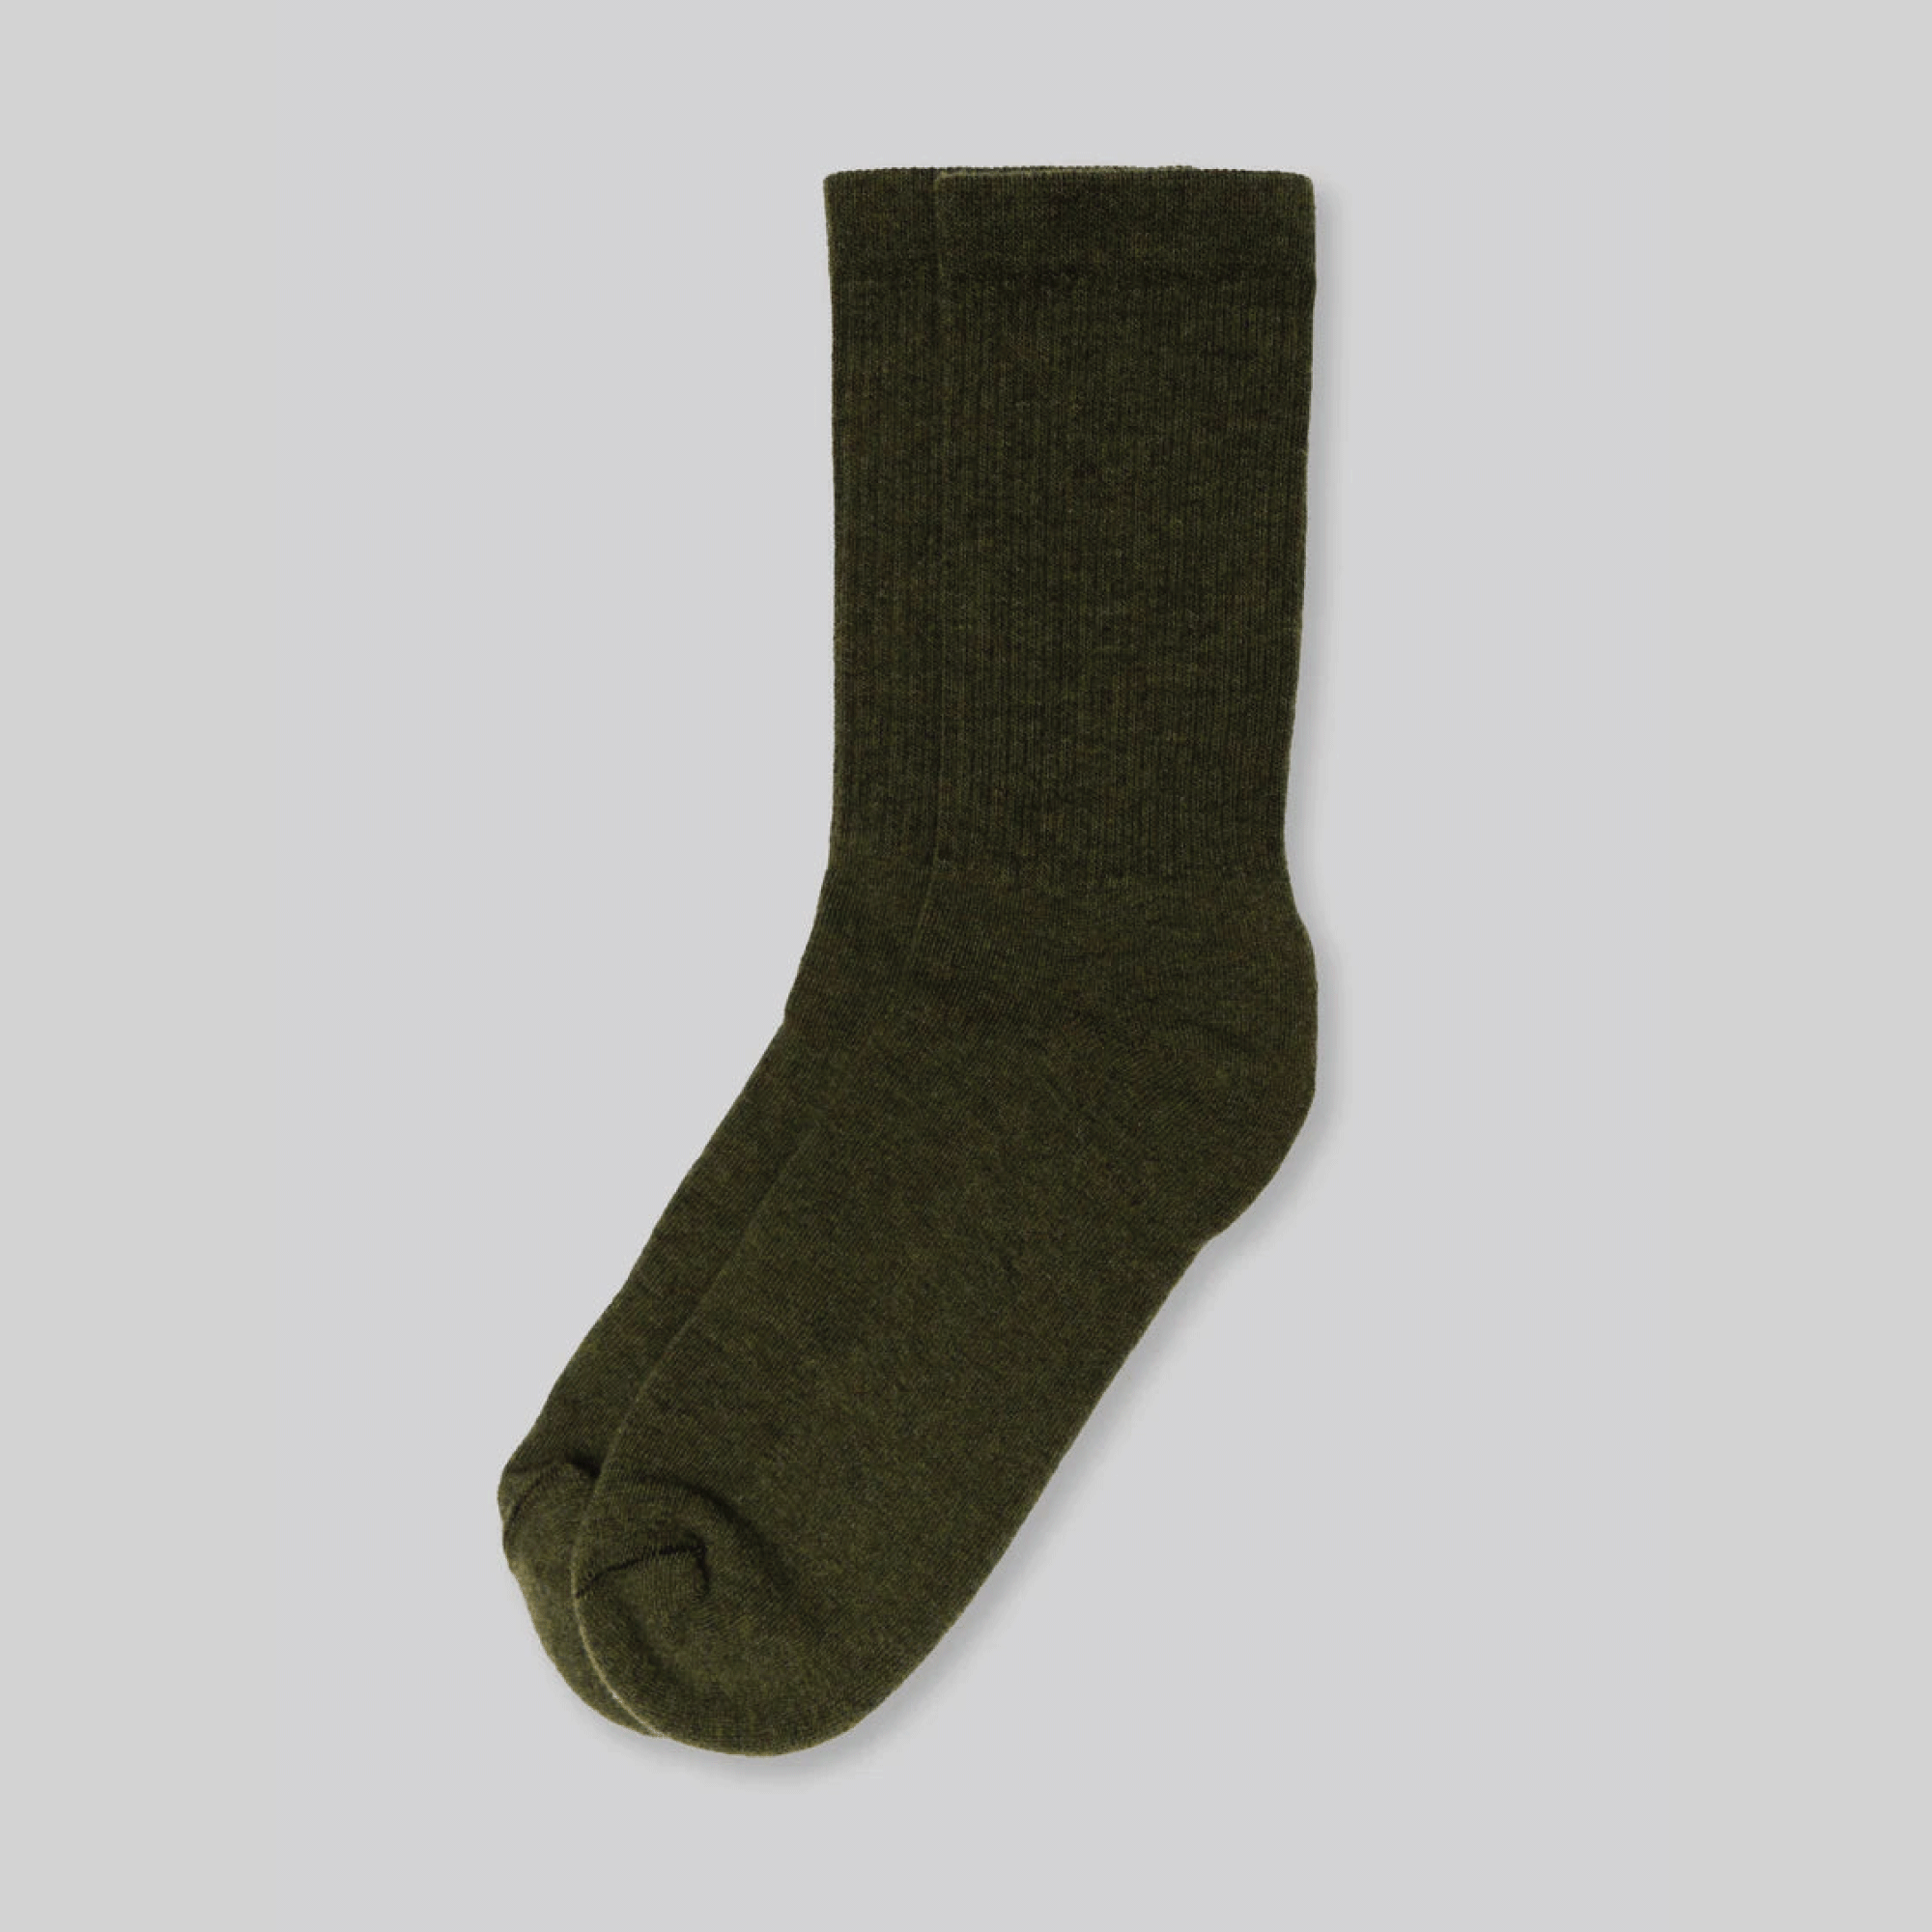 Superfine Merino Wool Socks - Olive